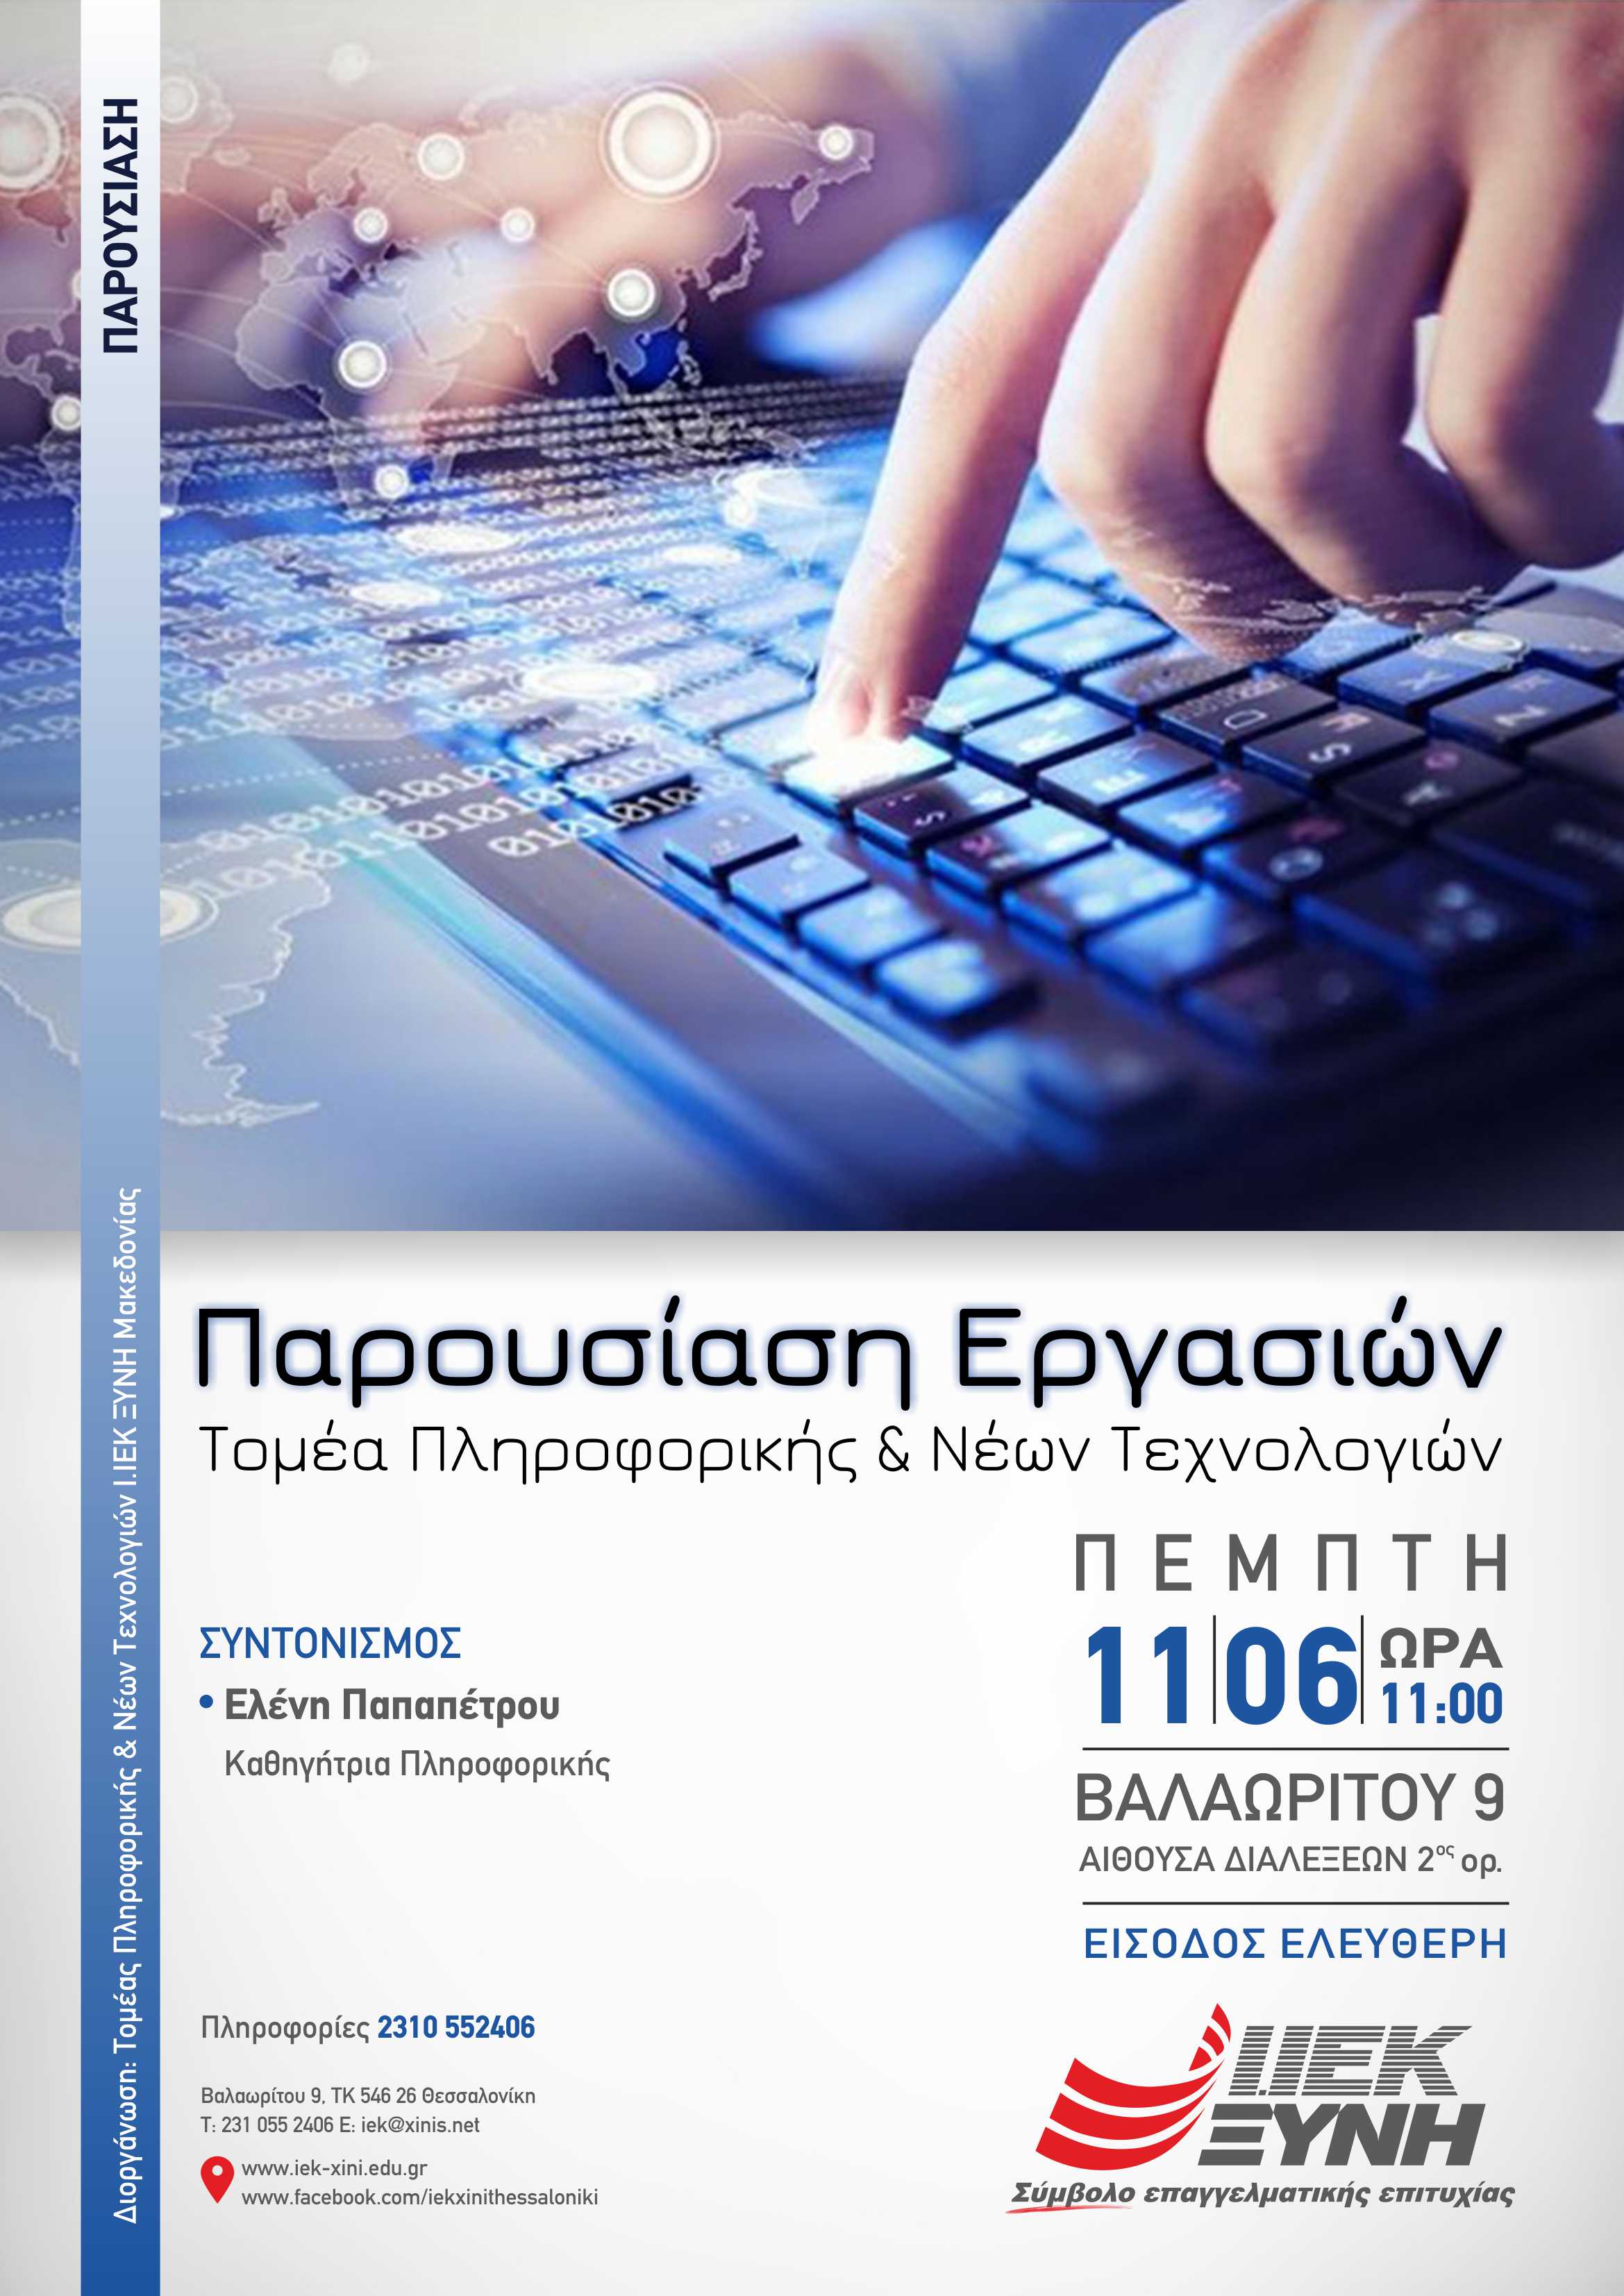 Πρωτότυπες δημιουργίες νέων τεχνολογιών από τους σπουδαστές του ΙΕΚ ΞΥΝΗ – Παρουσίαση εργασιών του Τομέα Πληροφορικής & Νέων Τεχνολογιών του ΙΕΚ ΞΥΝΗ Μακεδονίας